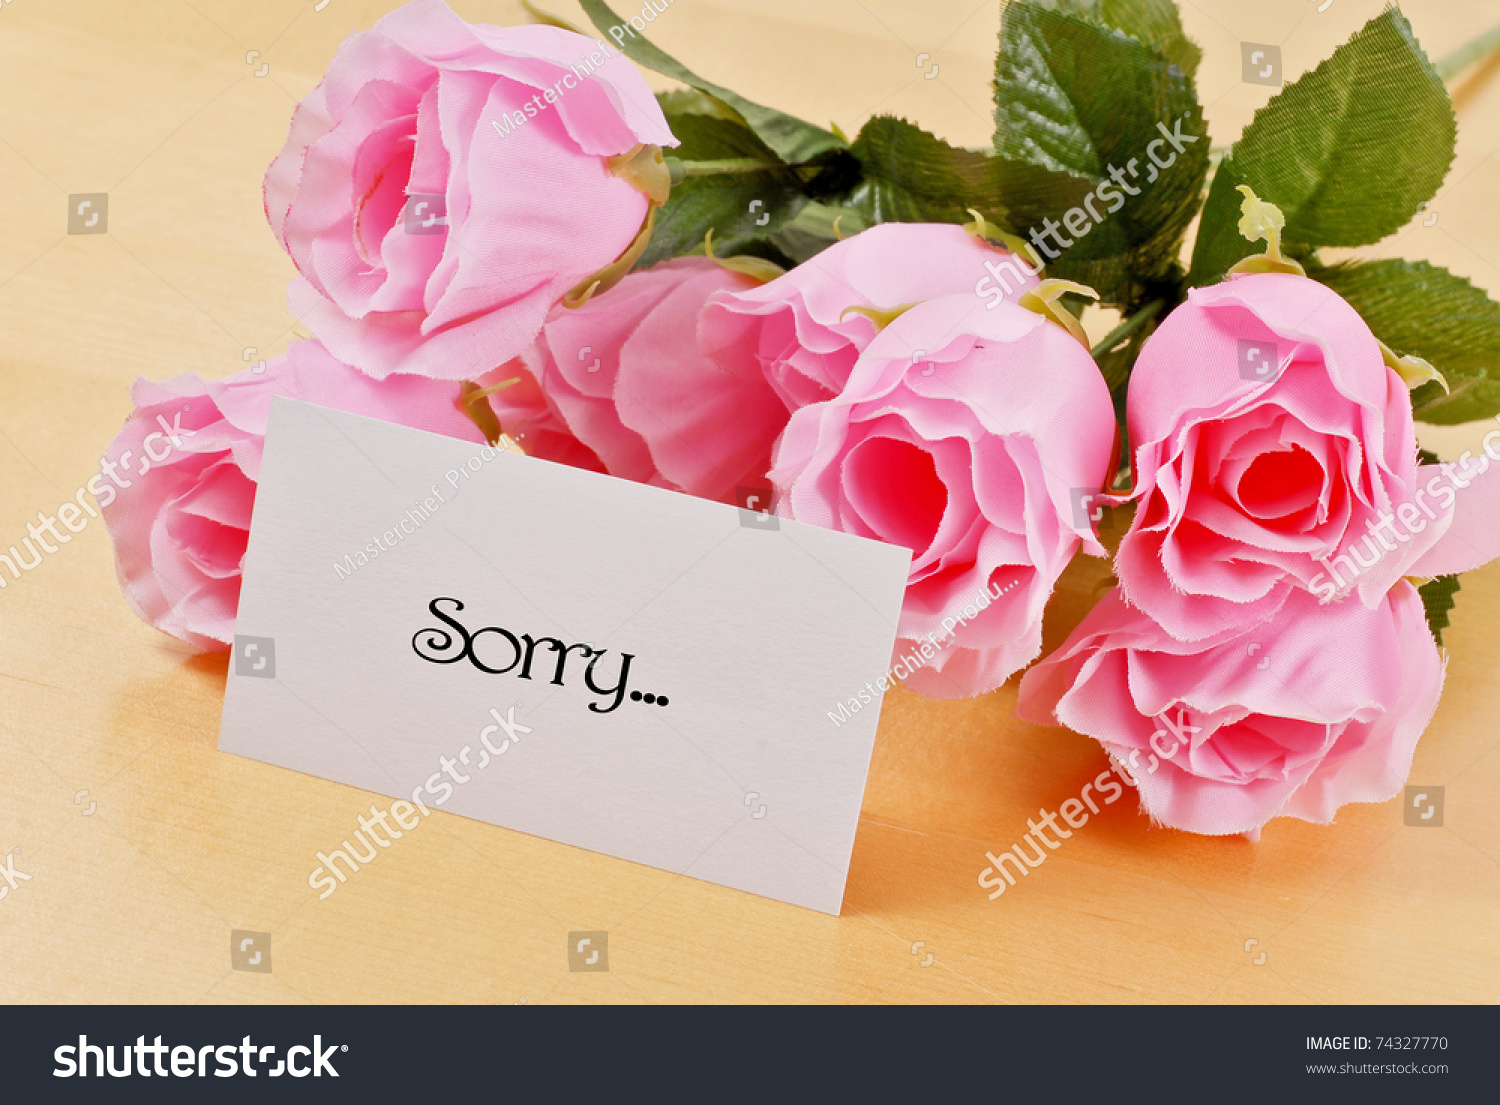 Букет цветов с извинениями